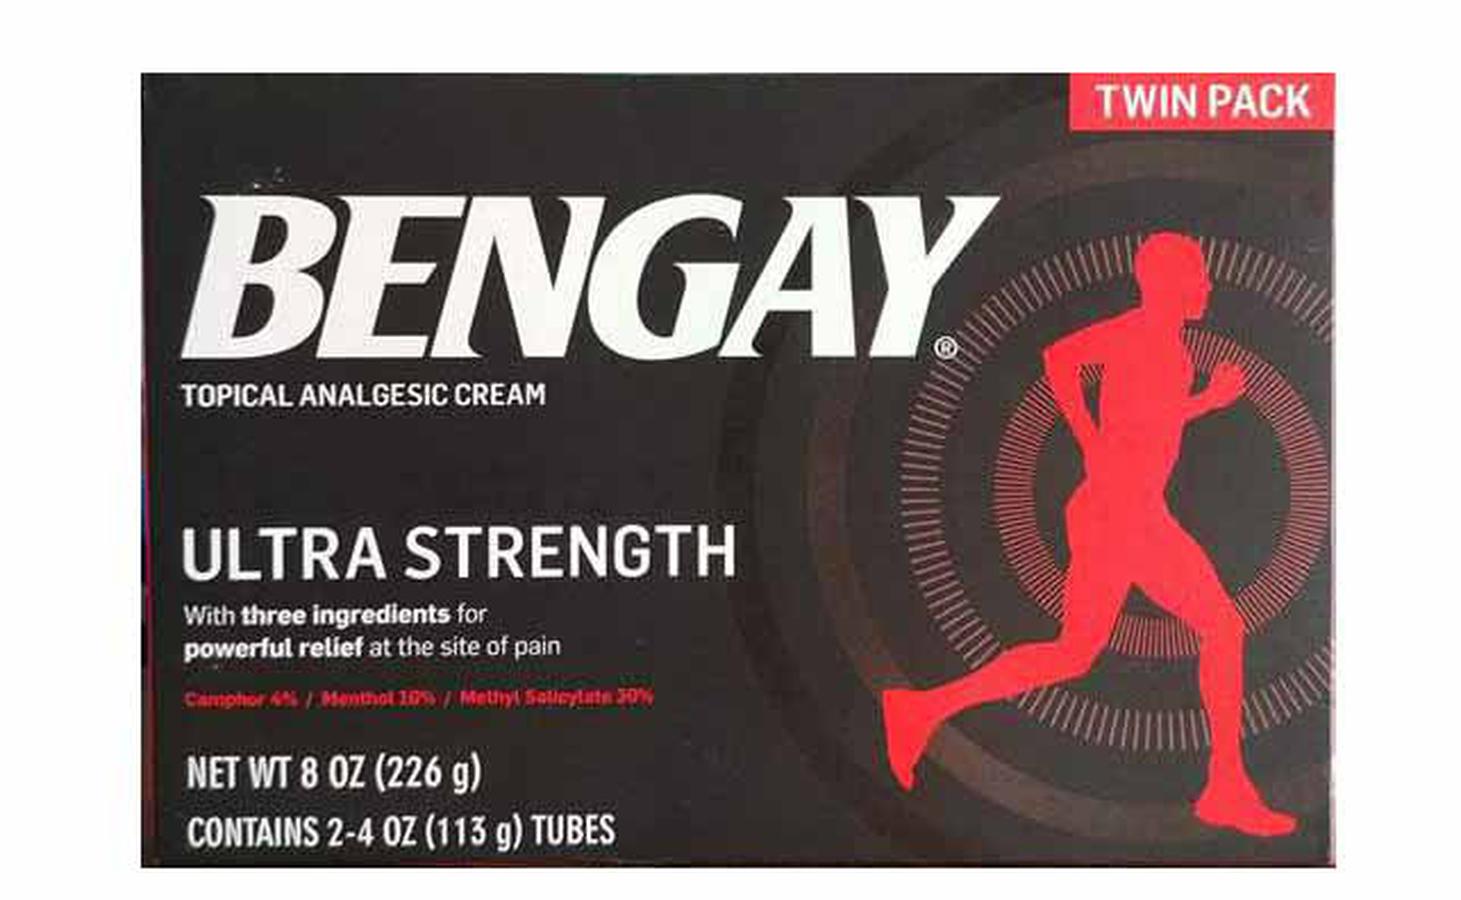 Bengay Ultra Strength, dầu xoa bóp Bengay của Mỹ, kem xoa bóp Bengay, đau xoa bóp Bengay của Mỹ, thuoc xoa Bengay, kem xoa bóp giảm đau Bengay